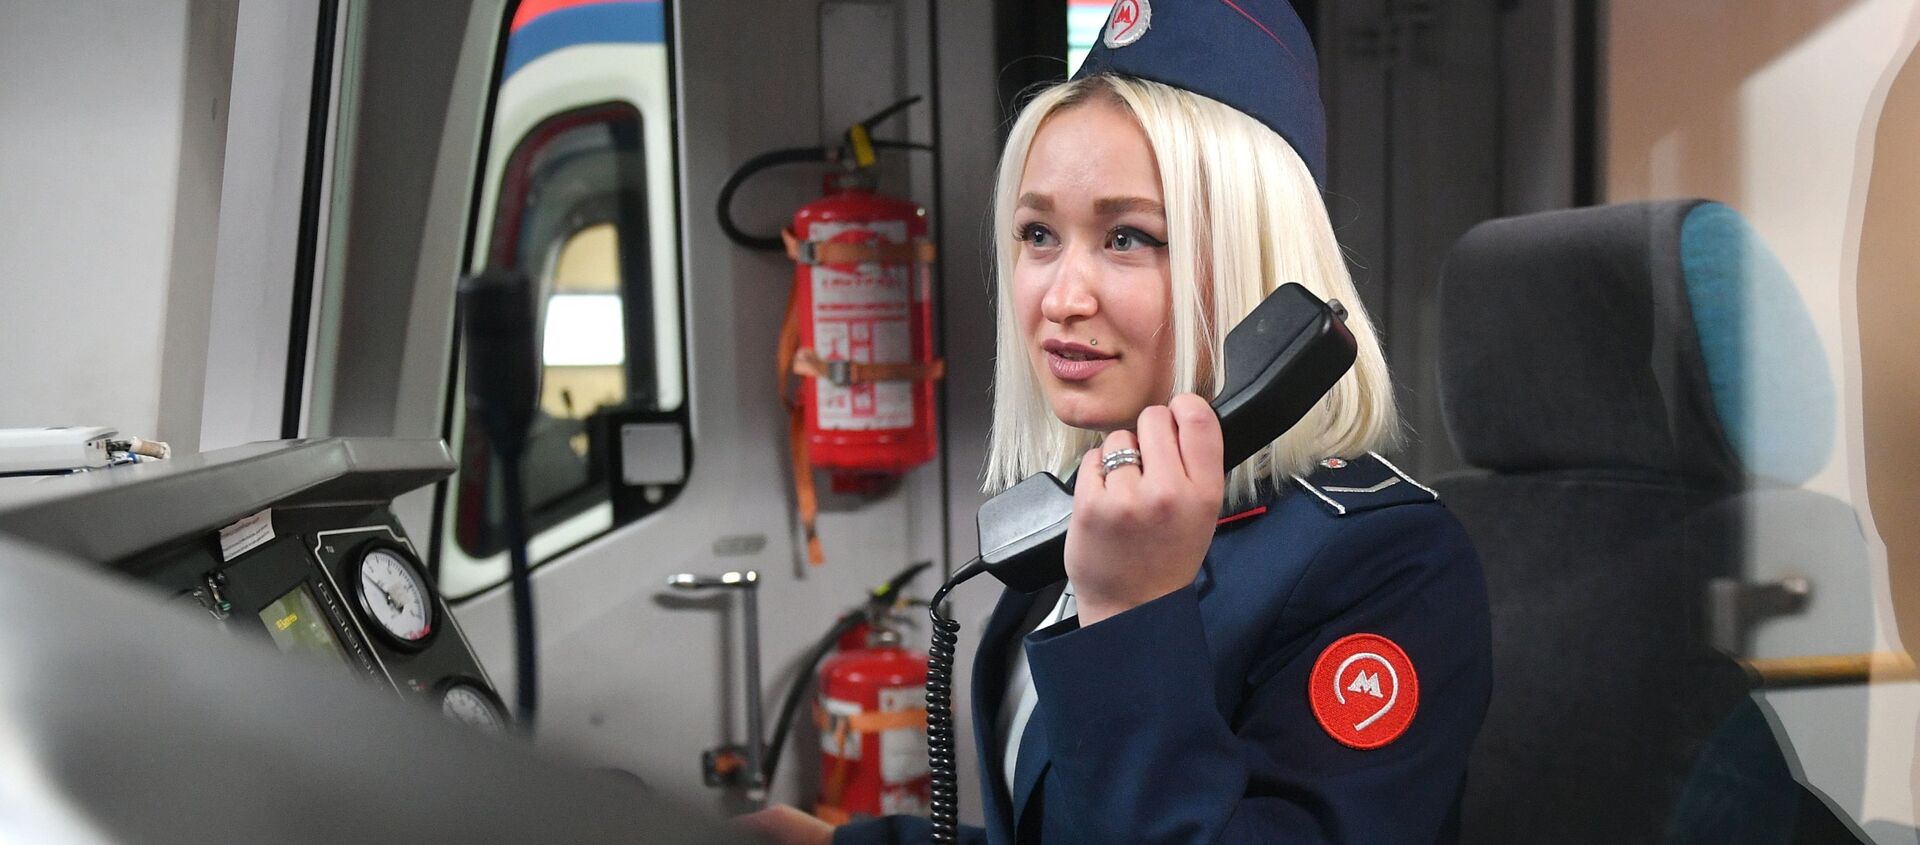 En el metro de Moscú empiezan a circular trenes conducidos por mujeres - Sputnik Mundo, 1920, 04.01.2021